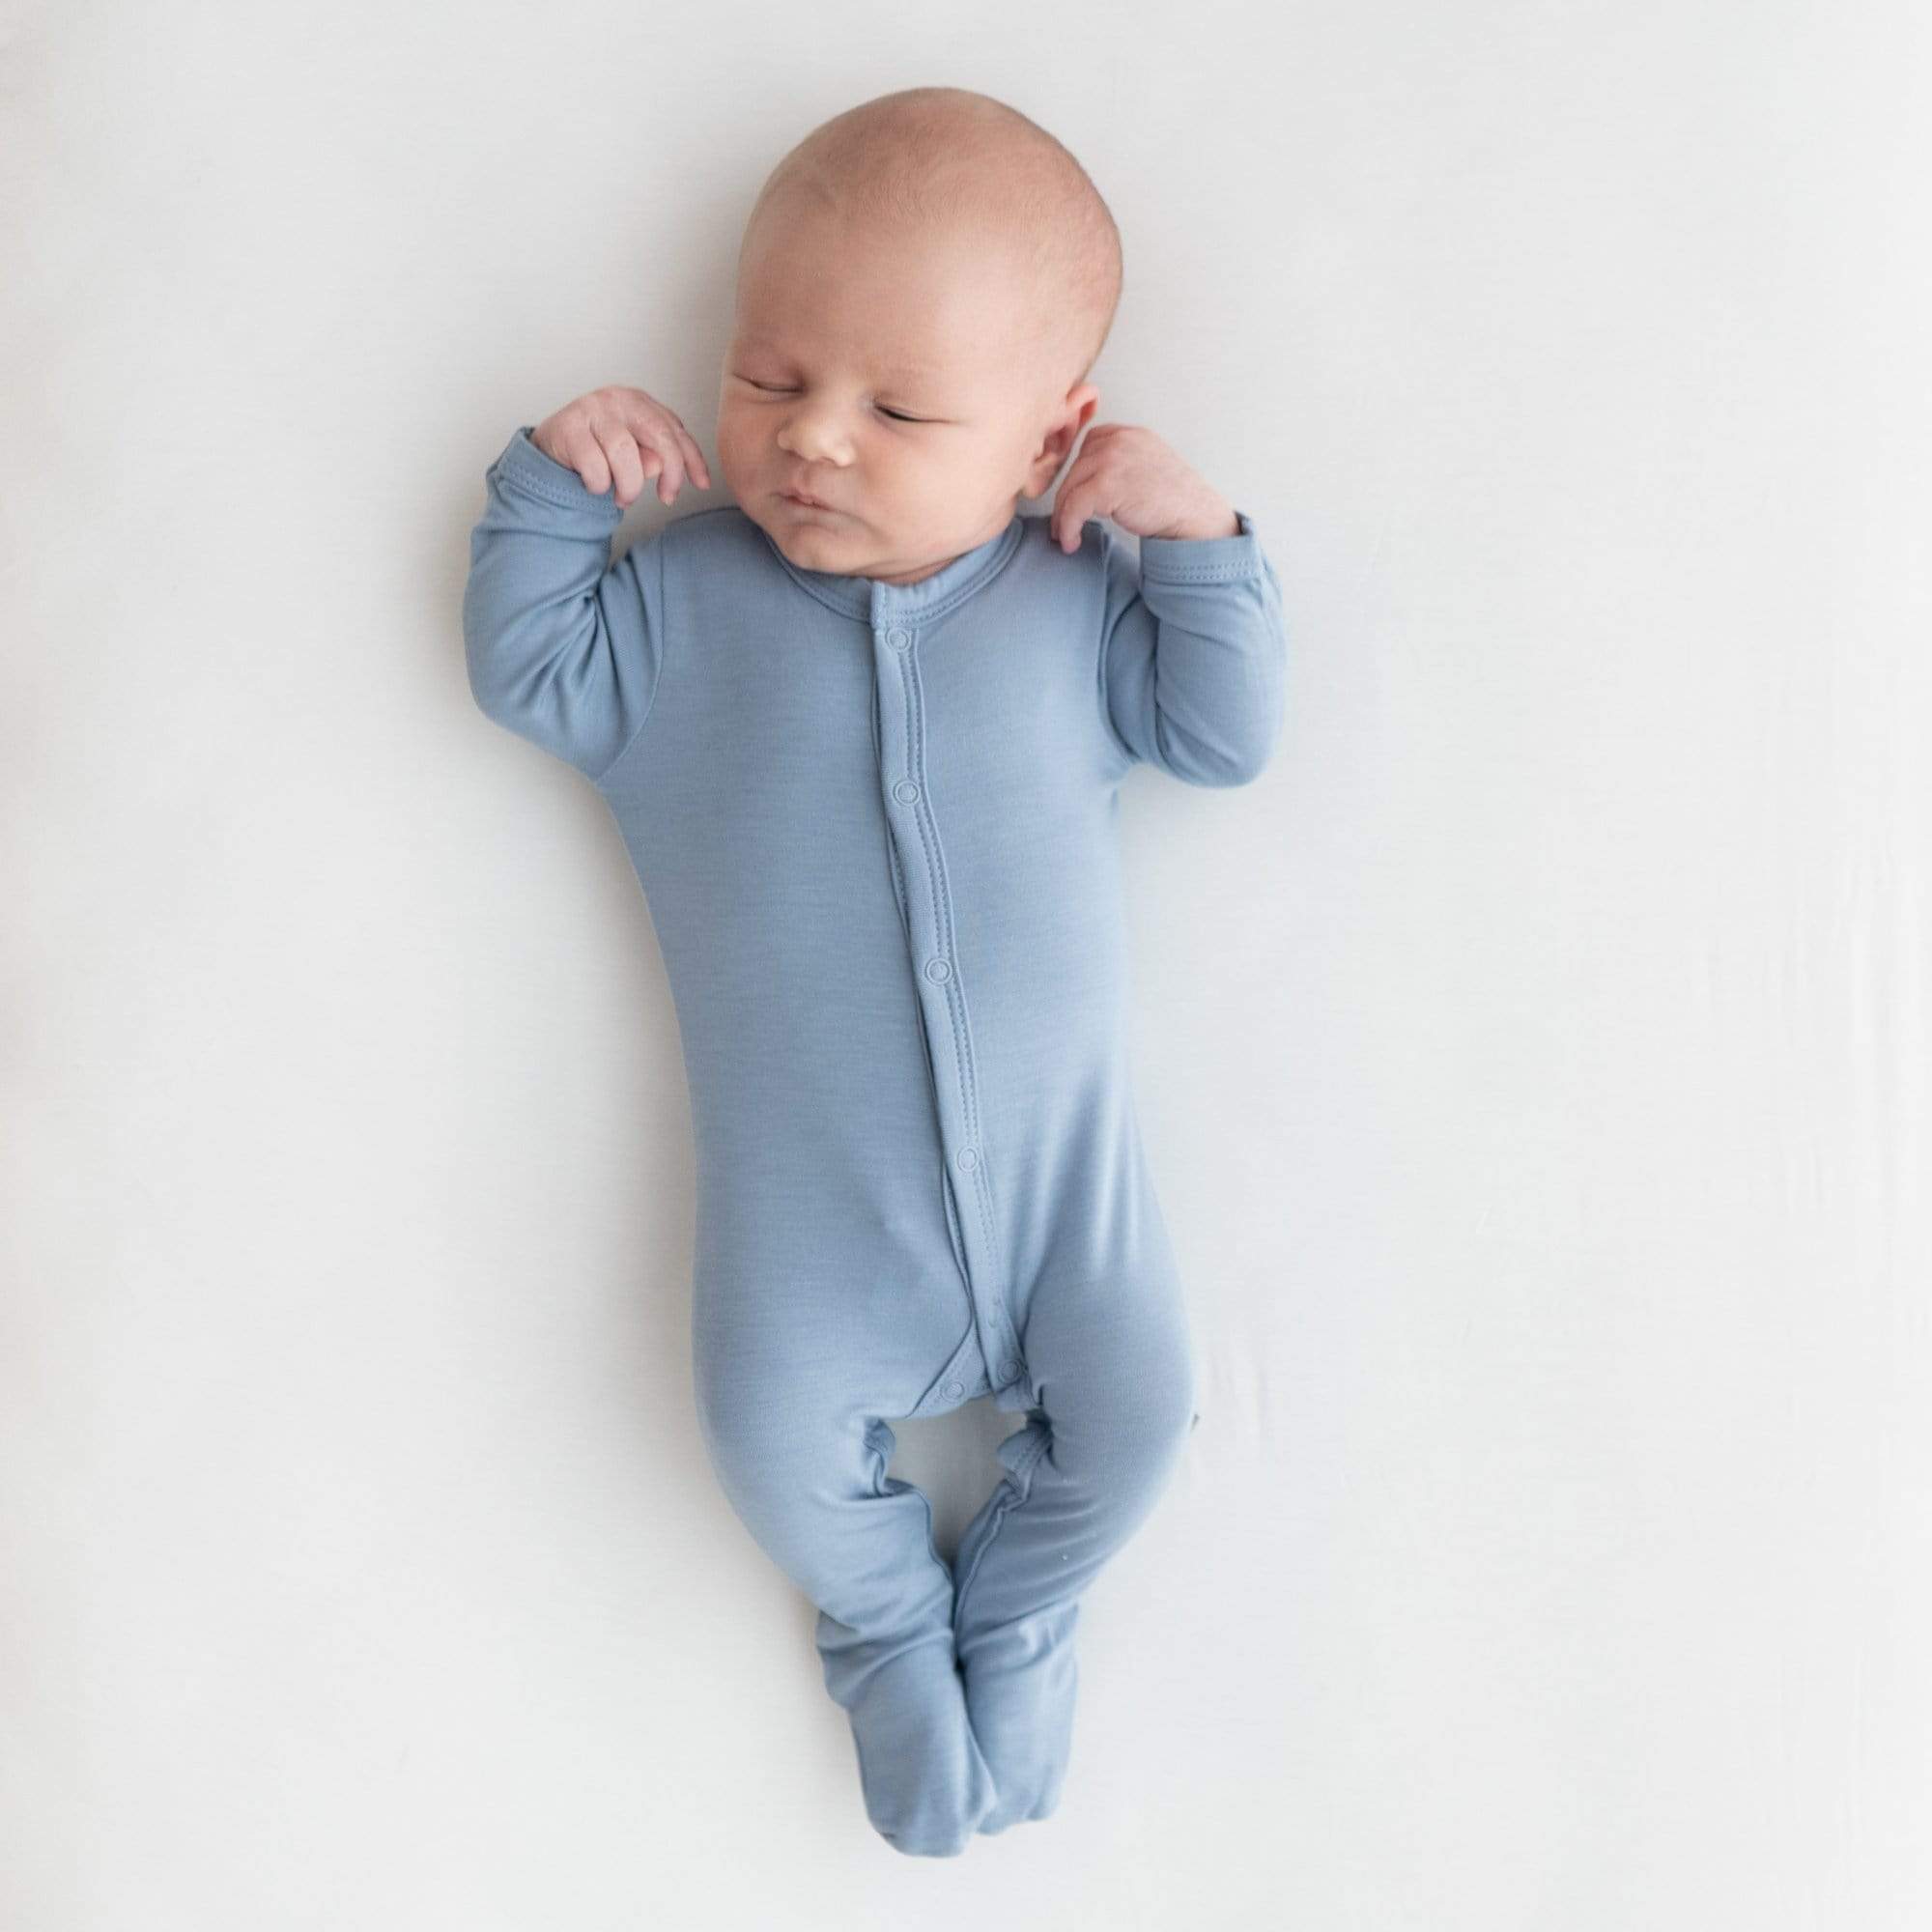 Newborn wearing Kyte Baby Footie in Slate